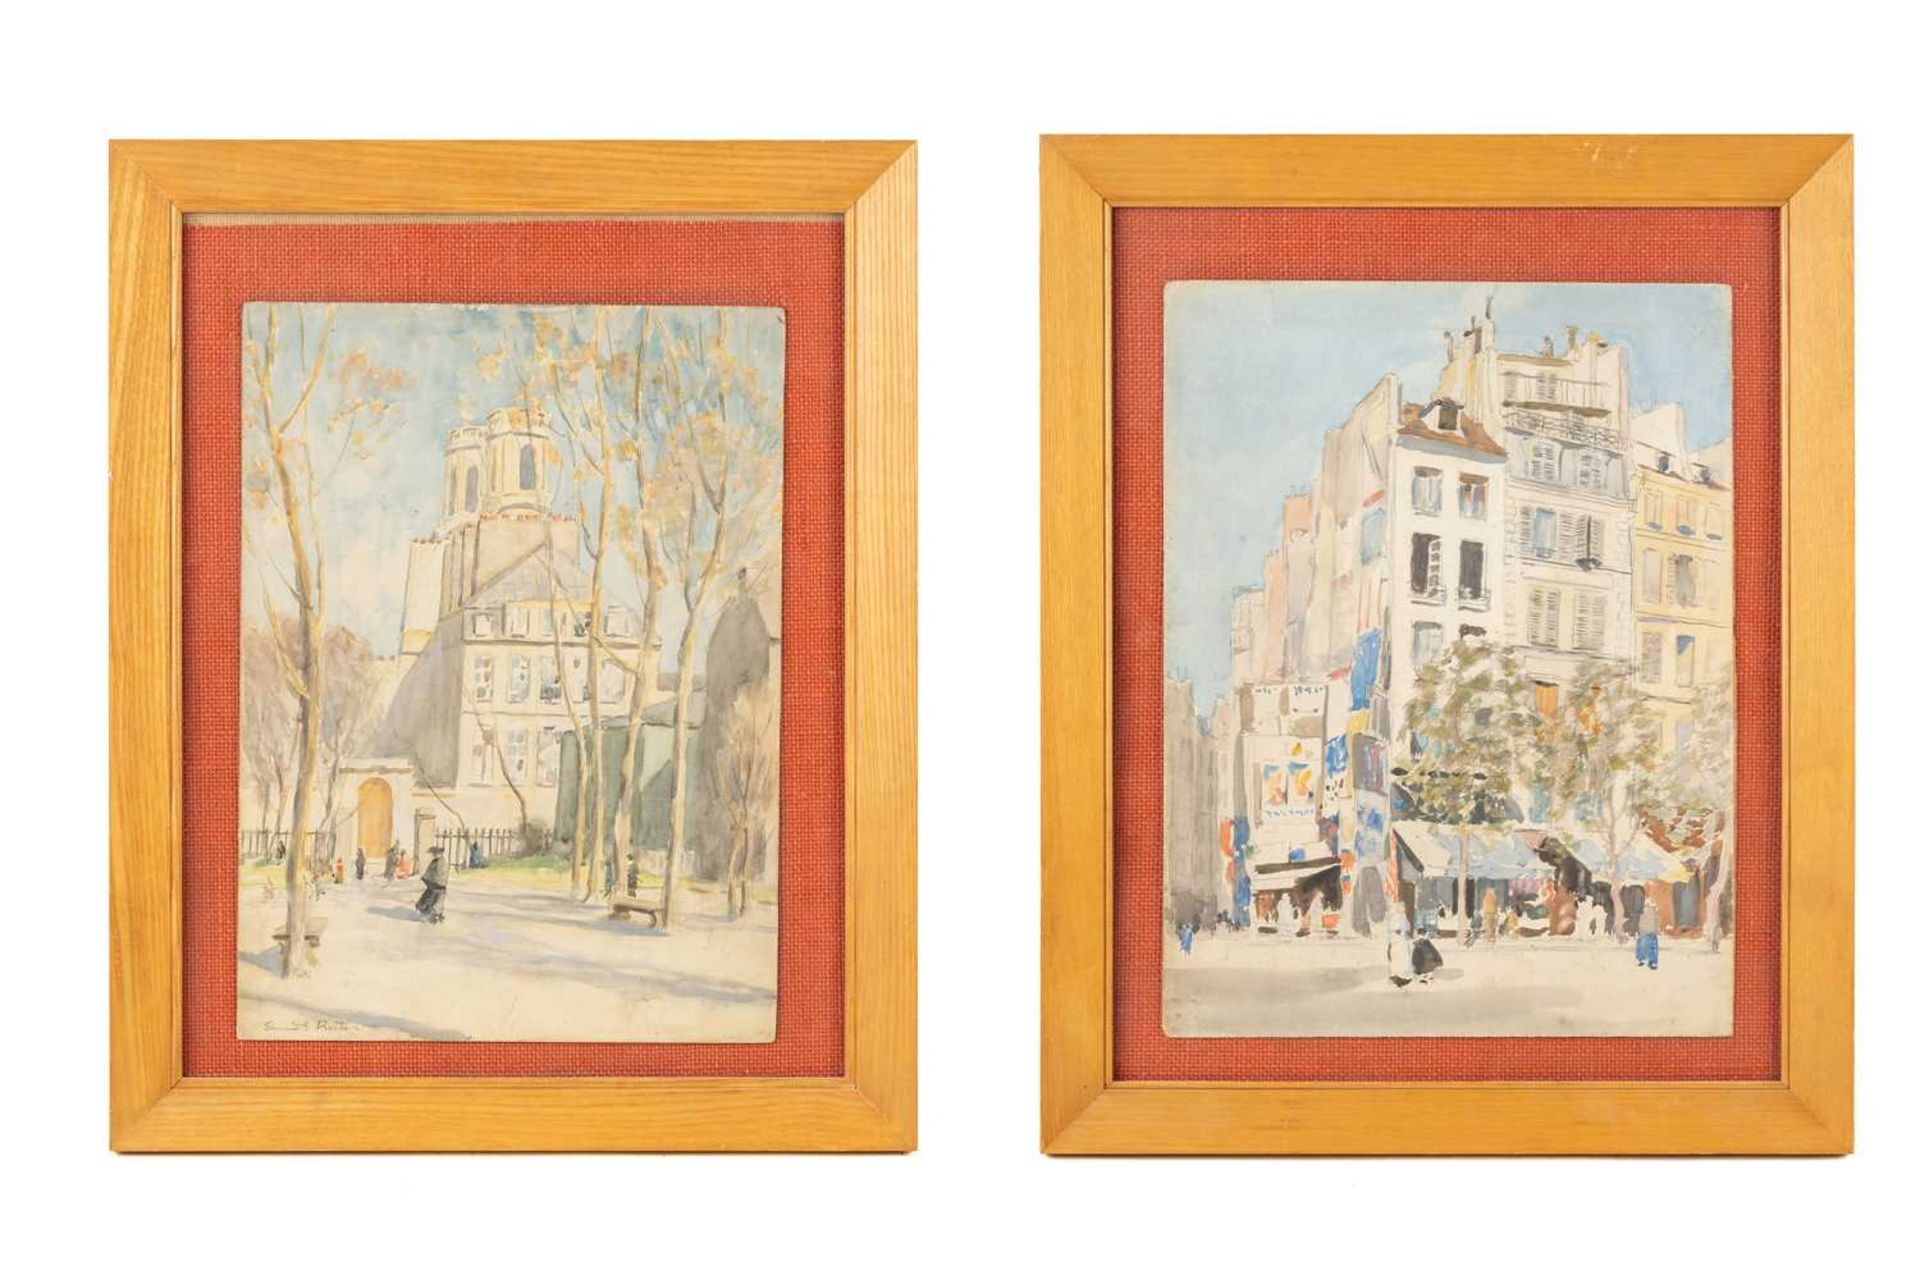 Ernest Procter (1886-1935), Eglisé St. Sulpice, Paris, signed, watercolour on board, 37 x 27 cm, and